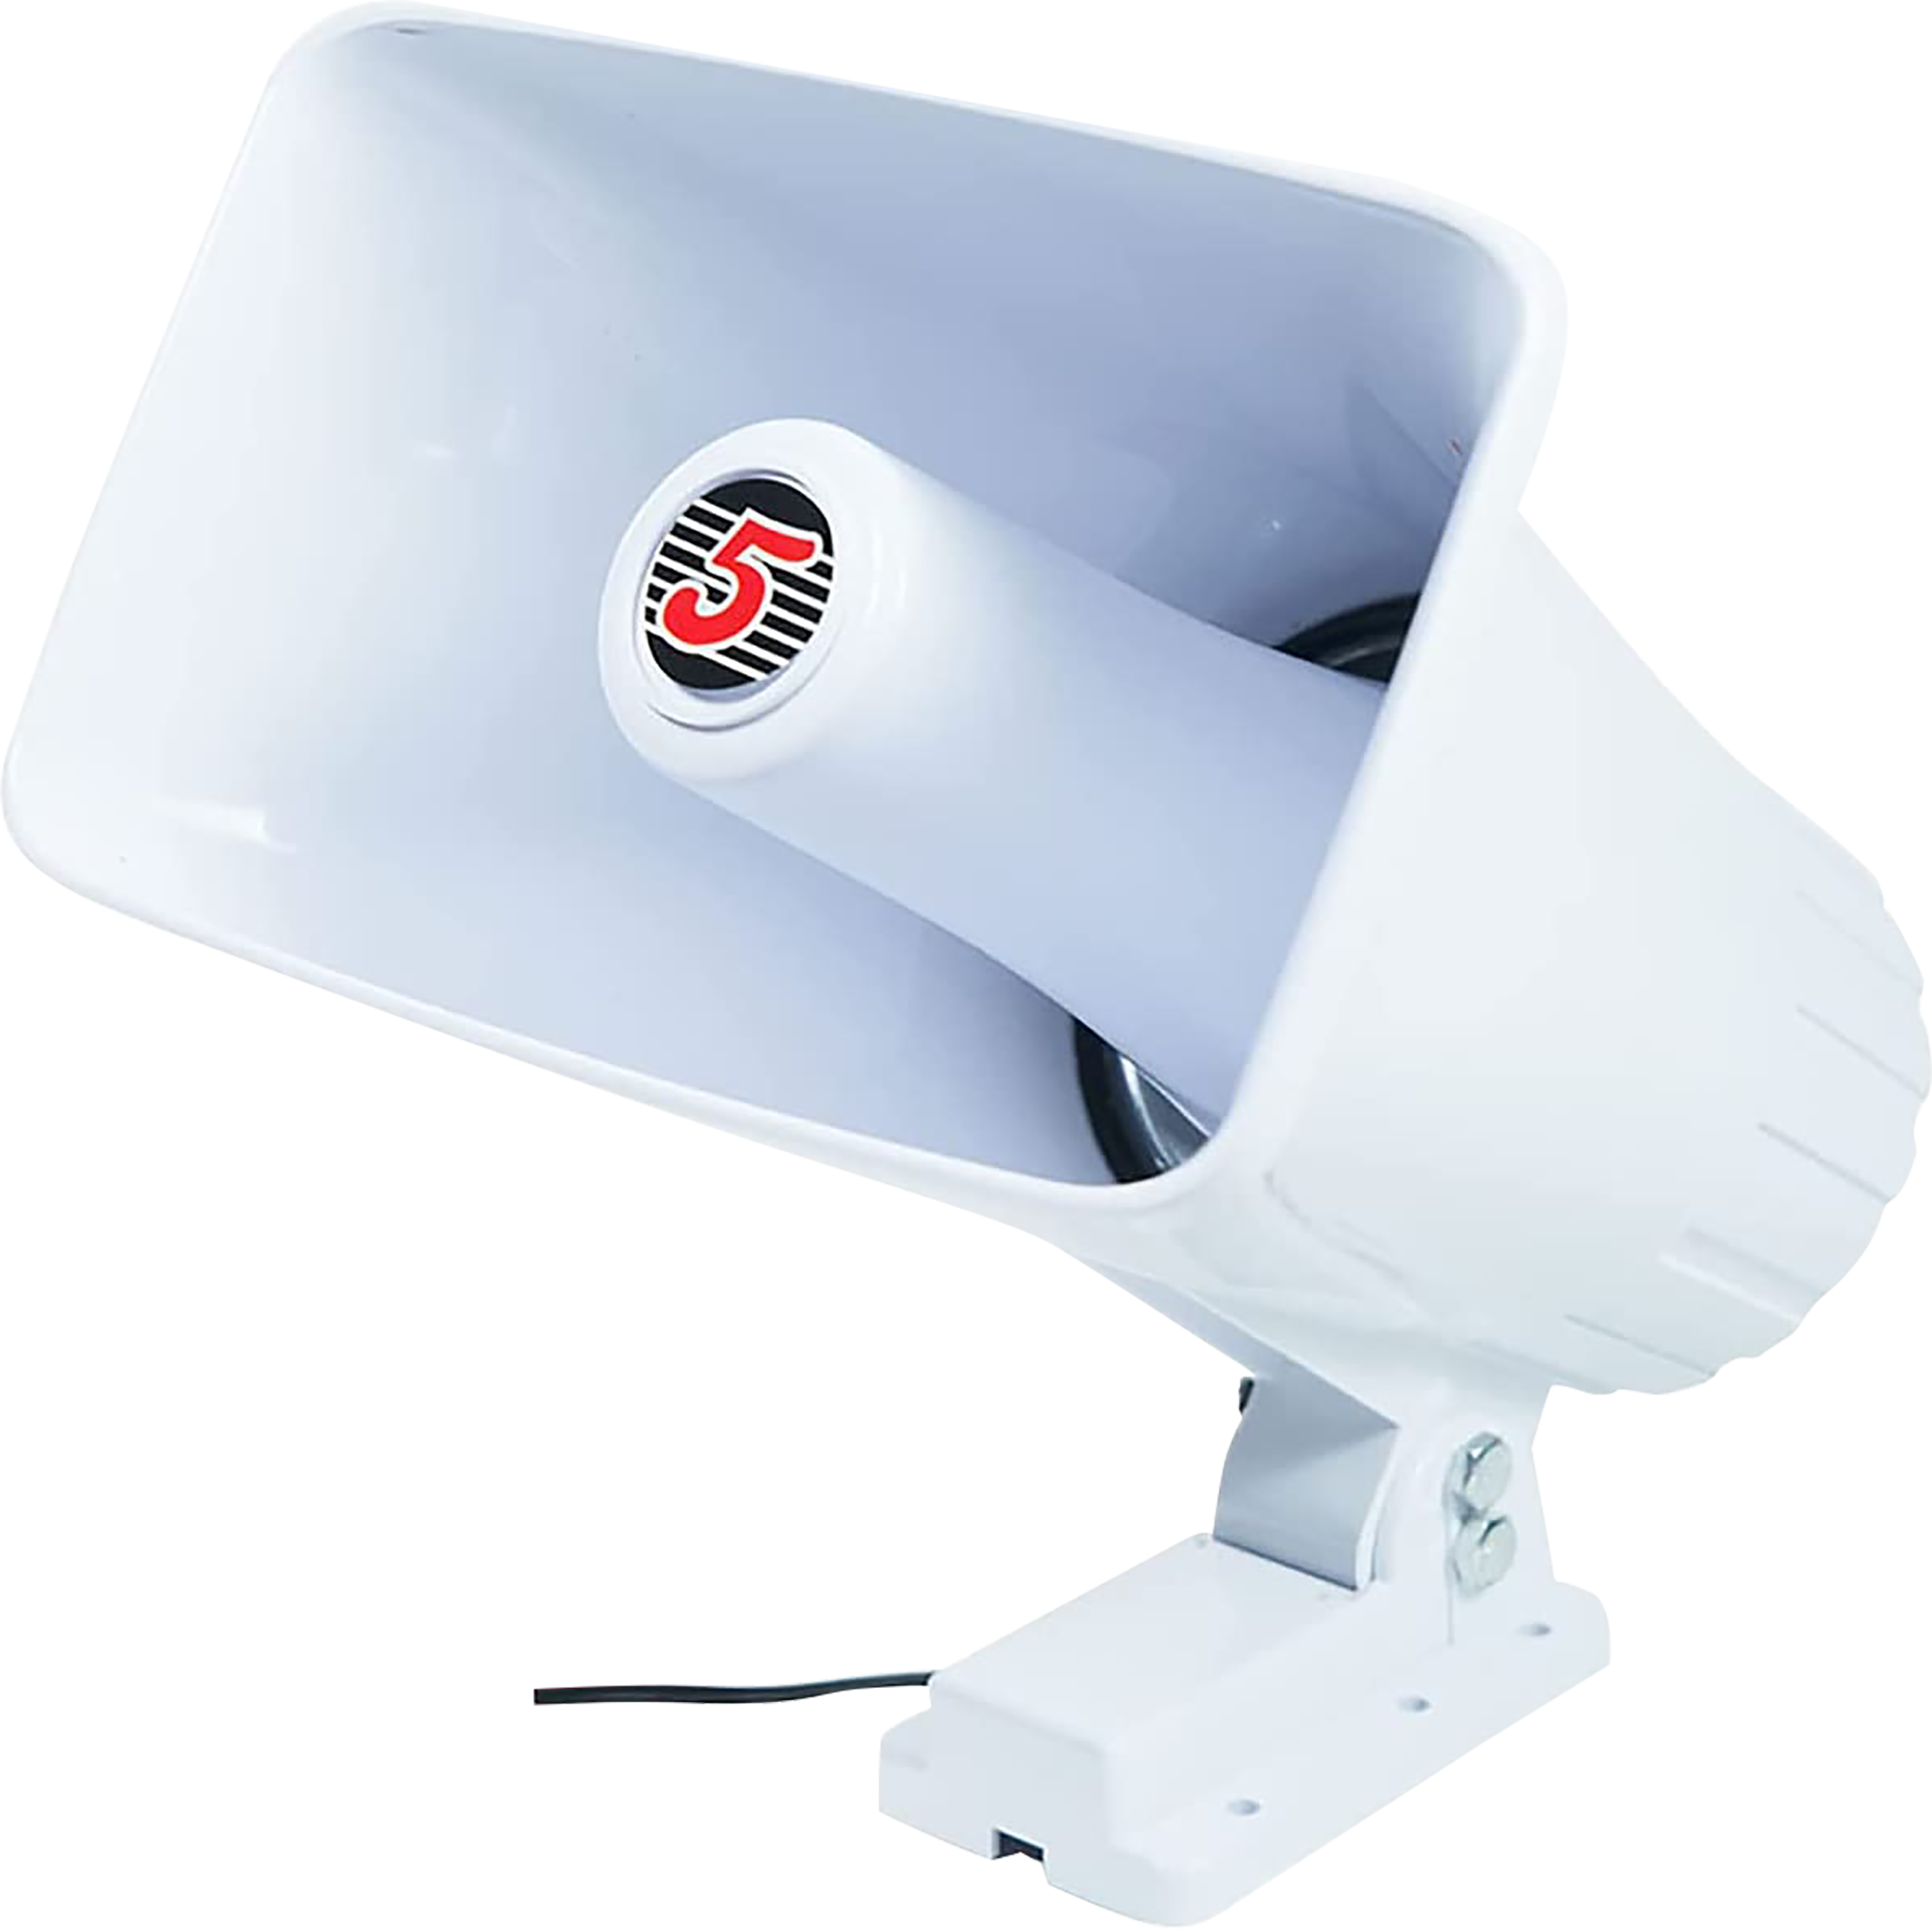 5 Core PA Speaker 8 Ohm Outdoor Horn Audio System 65W Speaker For CB Car Audio Horn Speakers Loud Hailer w Bracket & Hardware -HW 508 WH